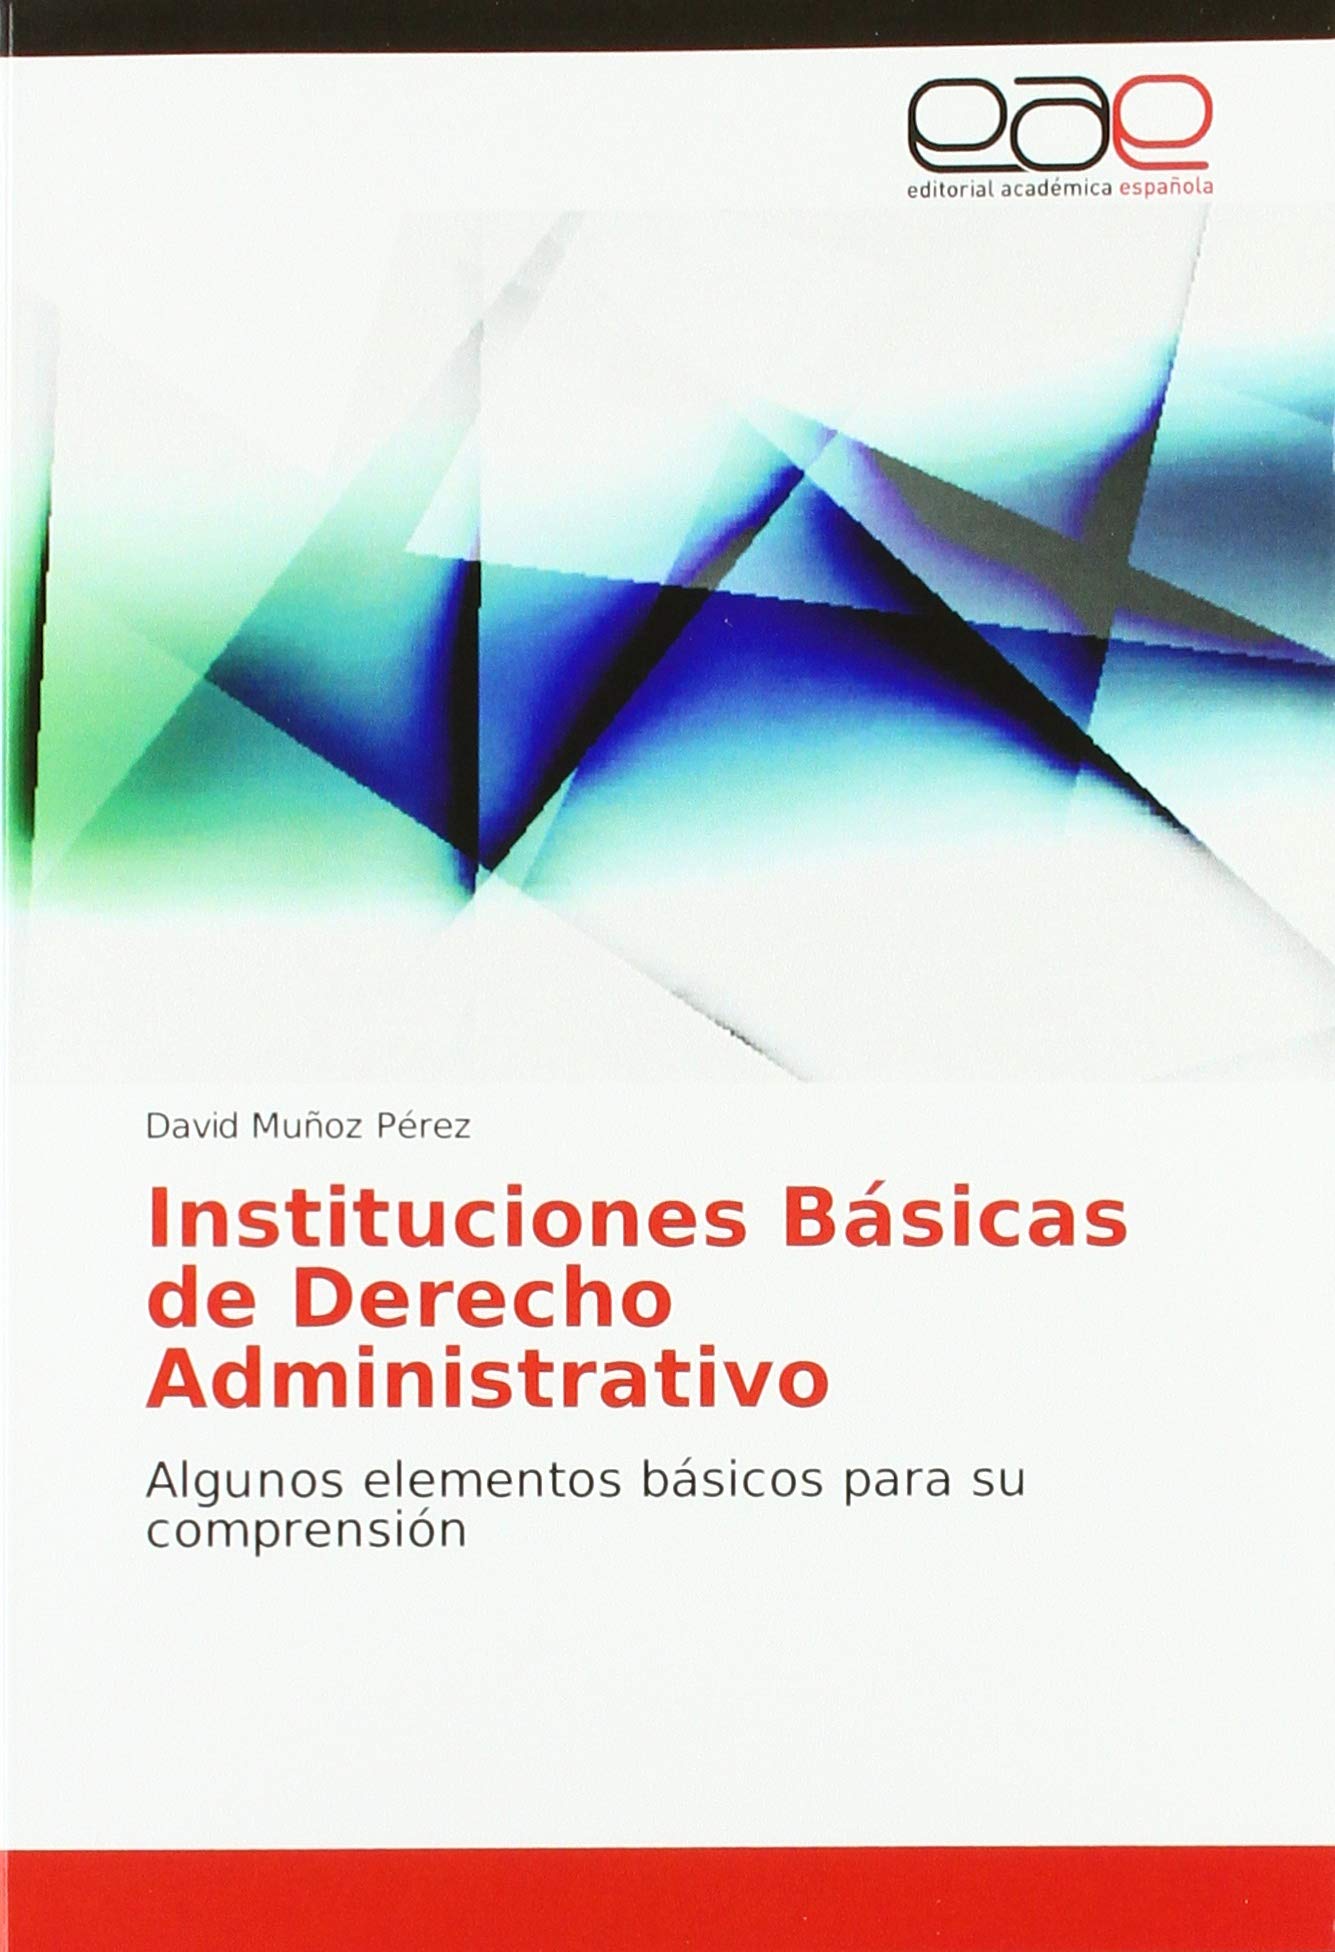 Imagen de portada del libro Instituciones básicas de Derecho Administrativo